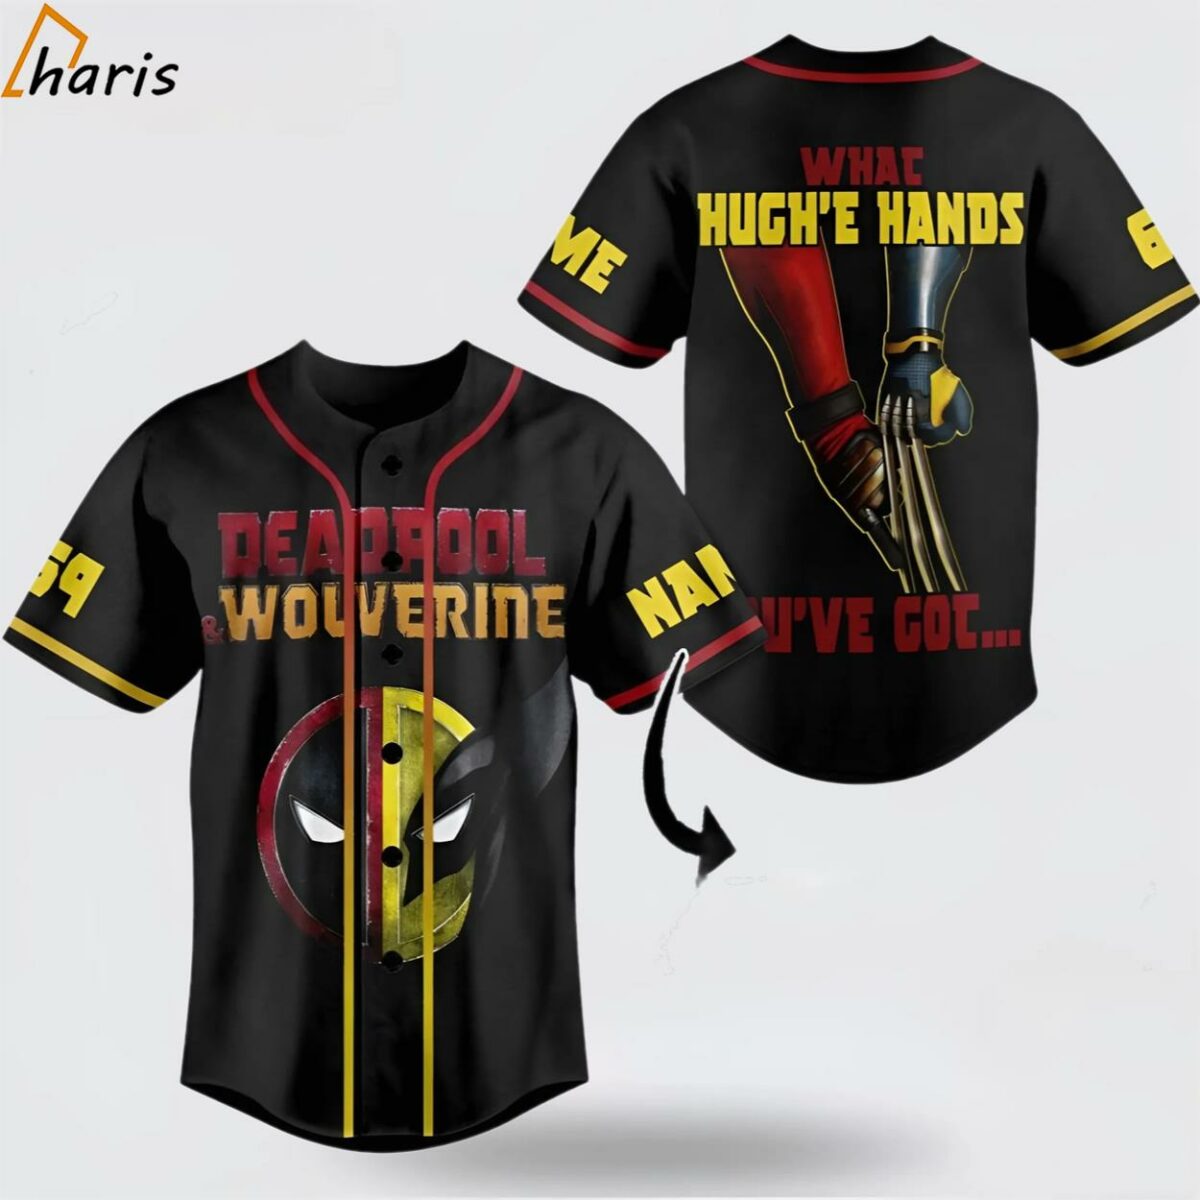 Deadpool Wolverine What Hugh'e Hands You've Got Custom Baseball Jersey 1 jersey